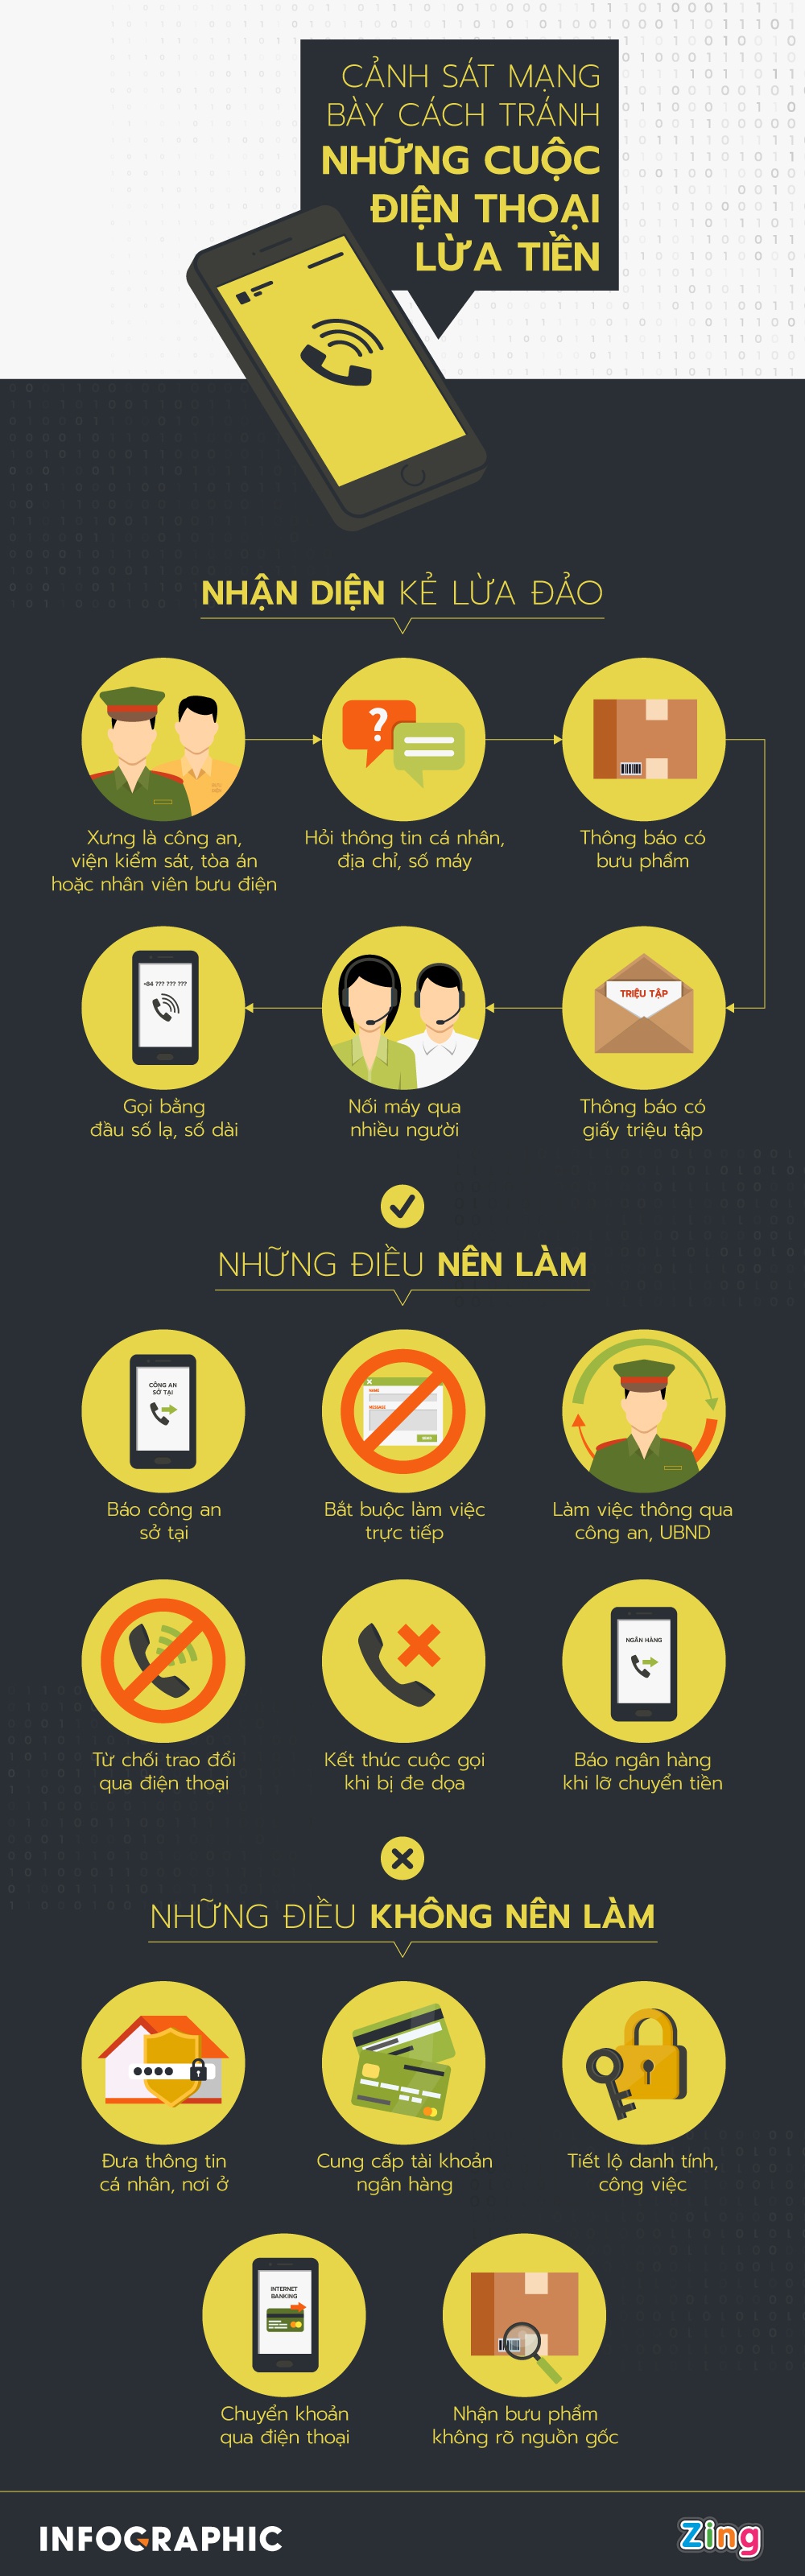 [Infographics] Cảnh sát mạng bày cách tránh những cú điện thoại lừa tiền - Ảnh 1